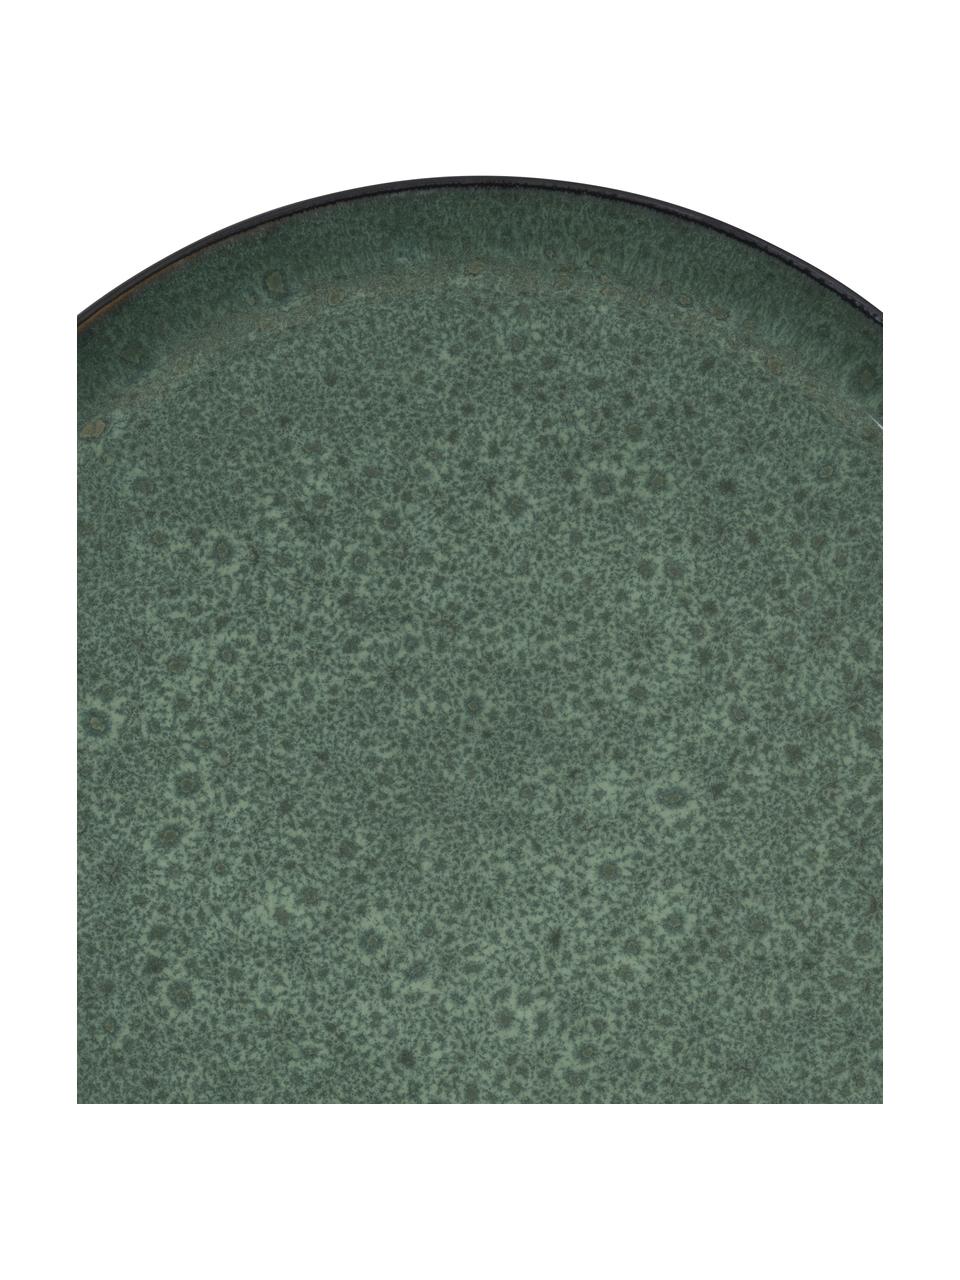 Dinerbord Gastro van keramiek in groen, 2 stuks, Keramiek, Zwart, groen, goudkleurig, Ø 27 x H 2 cm